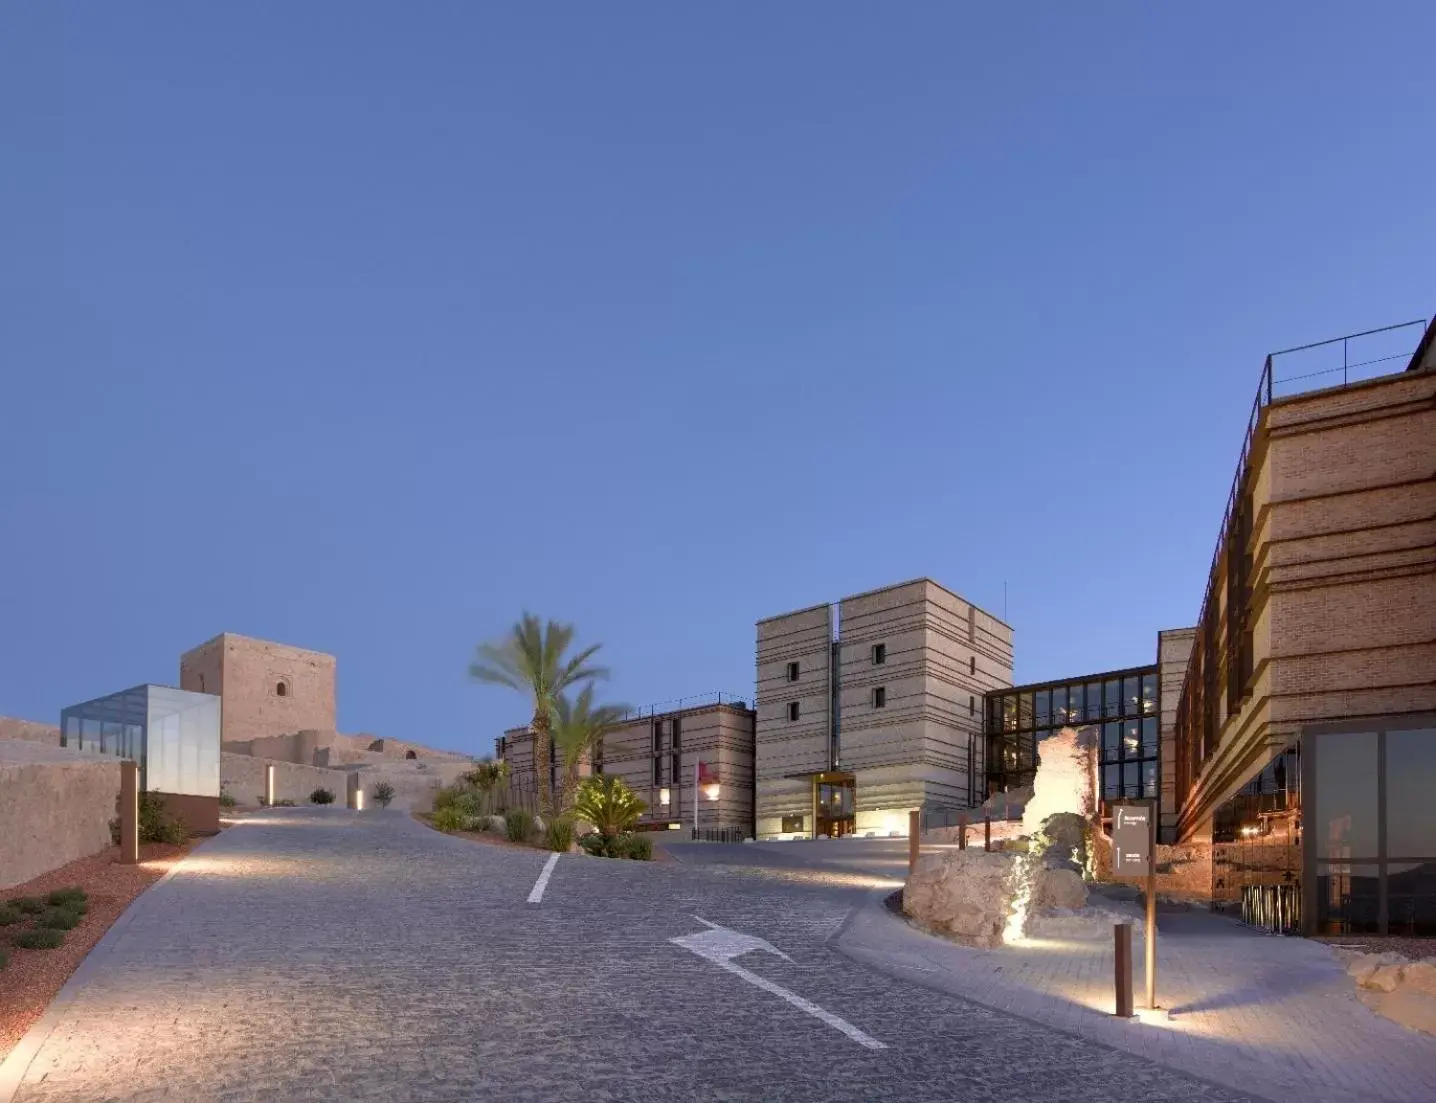 Property building in Parador de Lorca